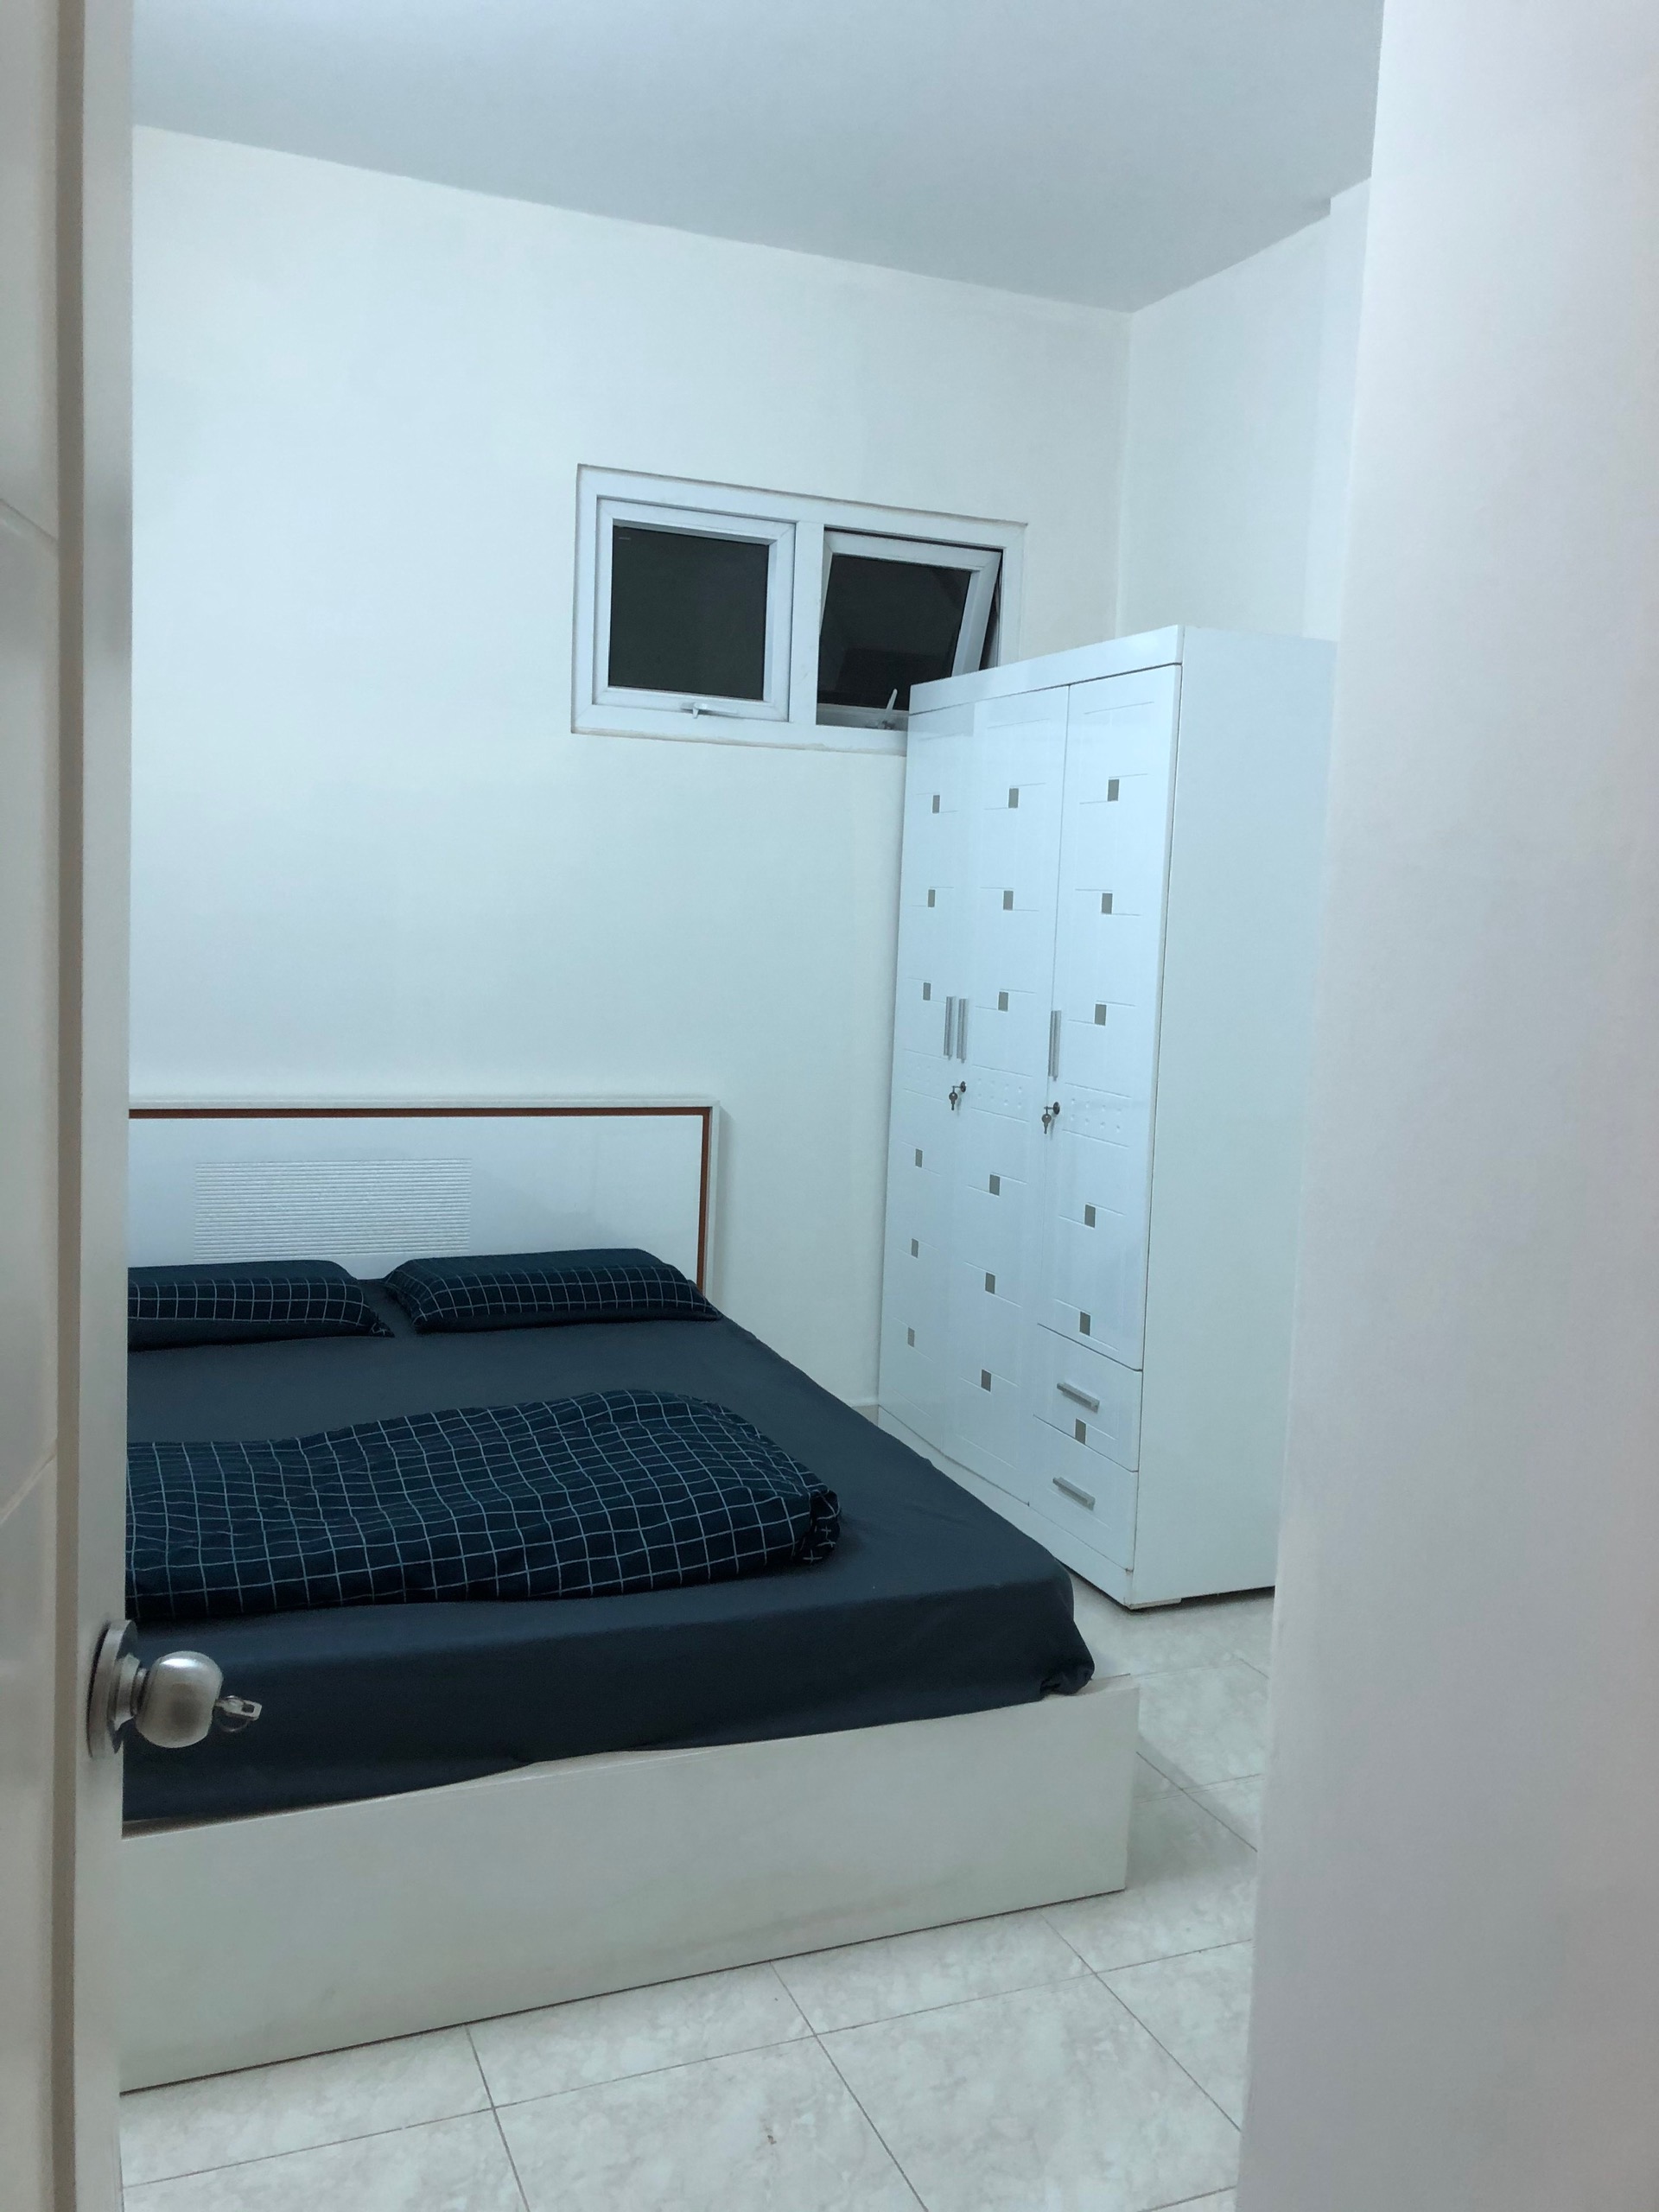 Cần cho thuê gấp căn hộ 2 phòng ngủ quận Bình Thạnh, gần cầu Thủ Thiêm